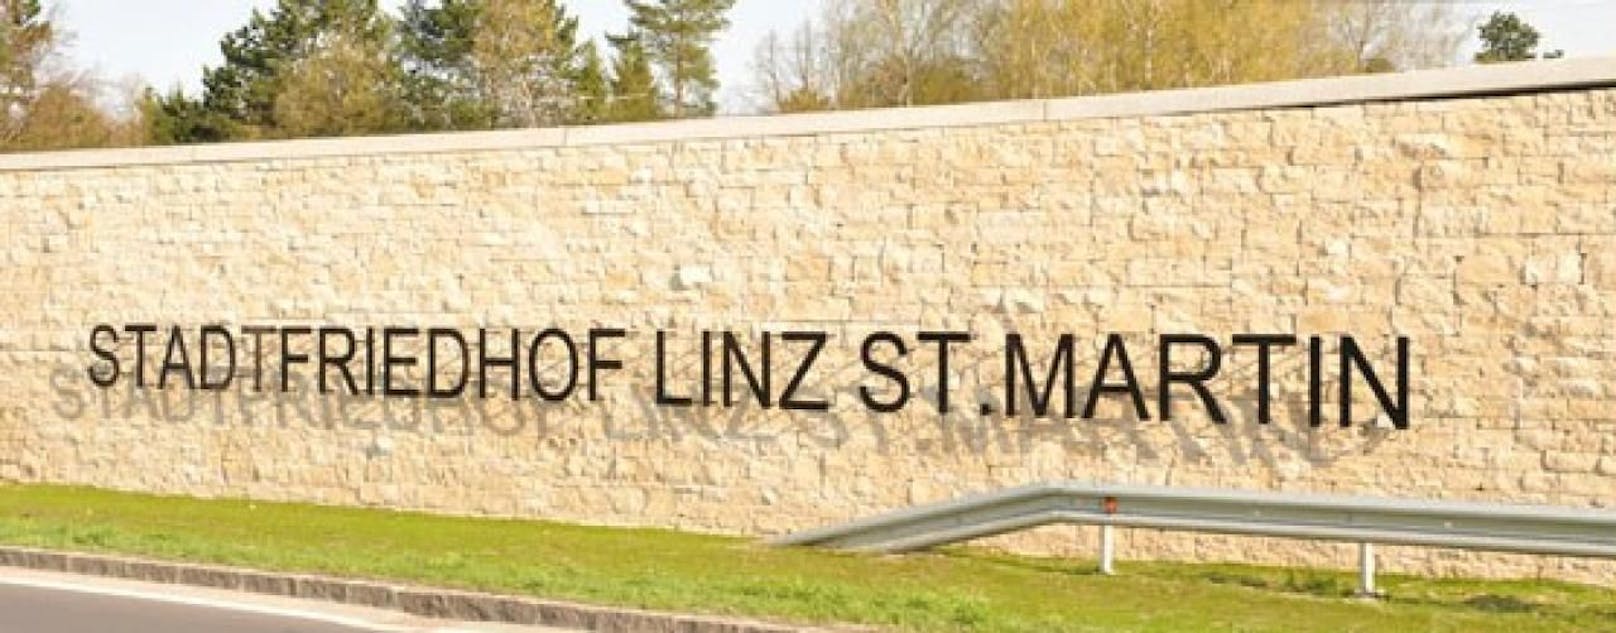 Am Friedhof St. Martin in Linz wurde eine Frau überfallen.